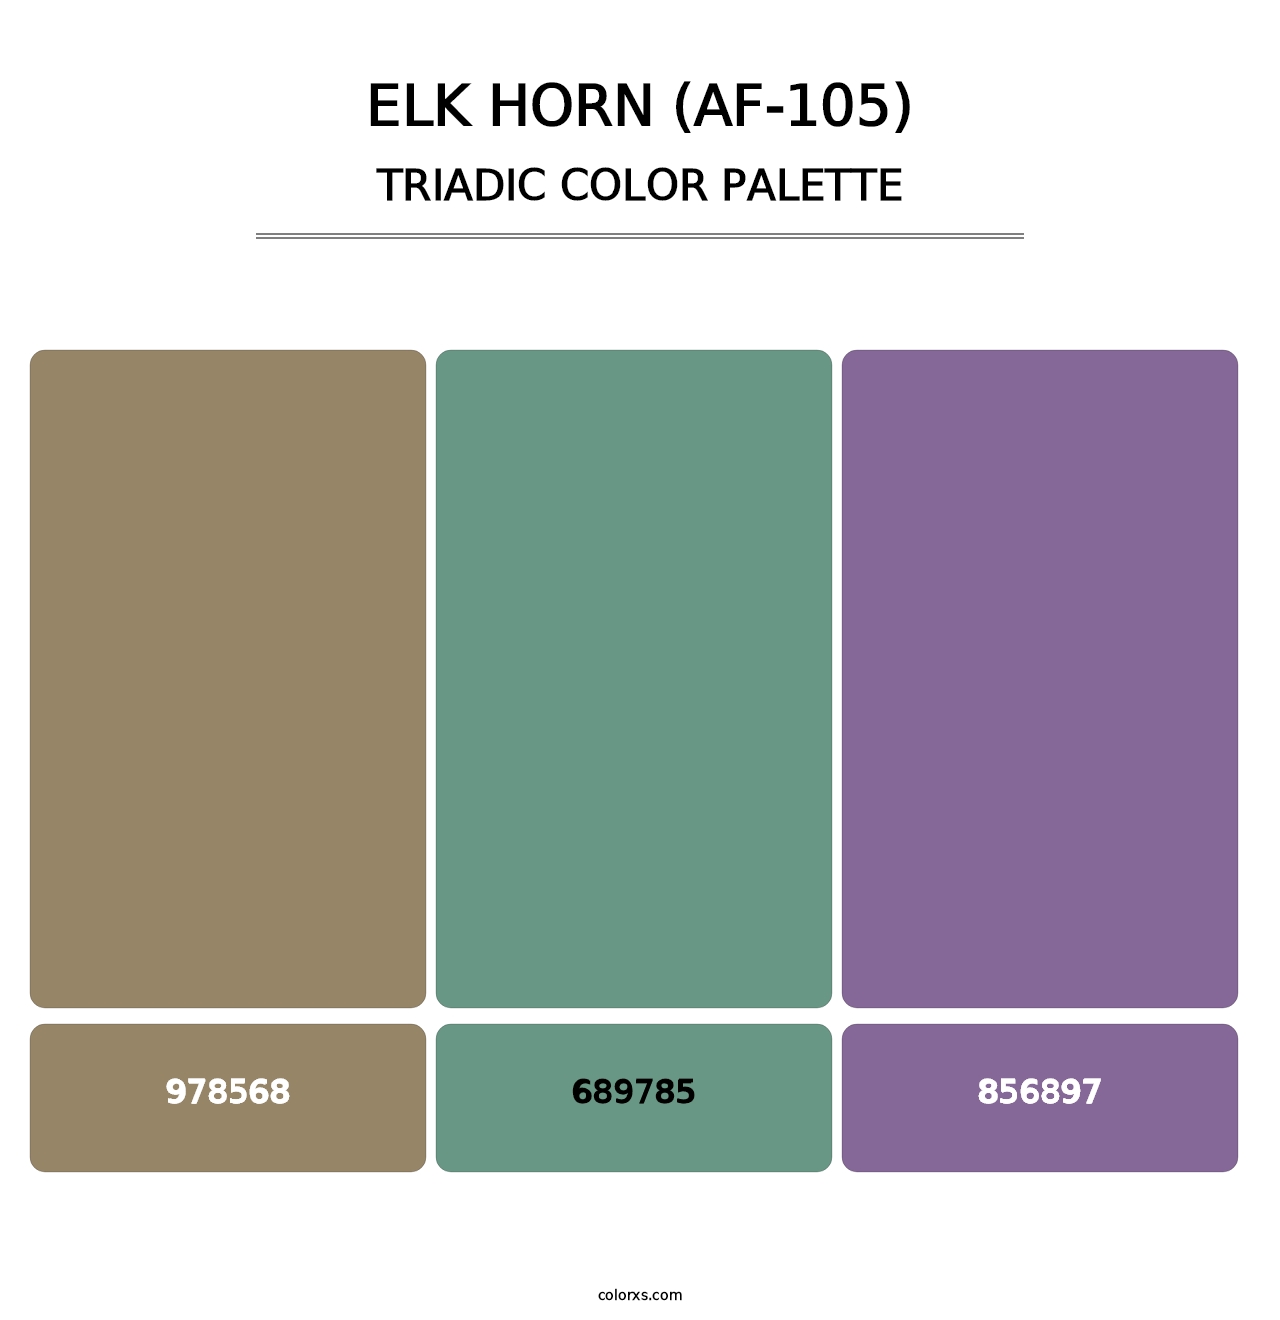 Elk Horn (AF-105) - Triadic Color Palette